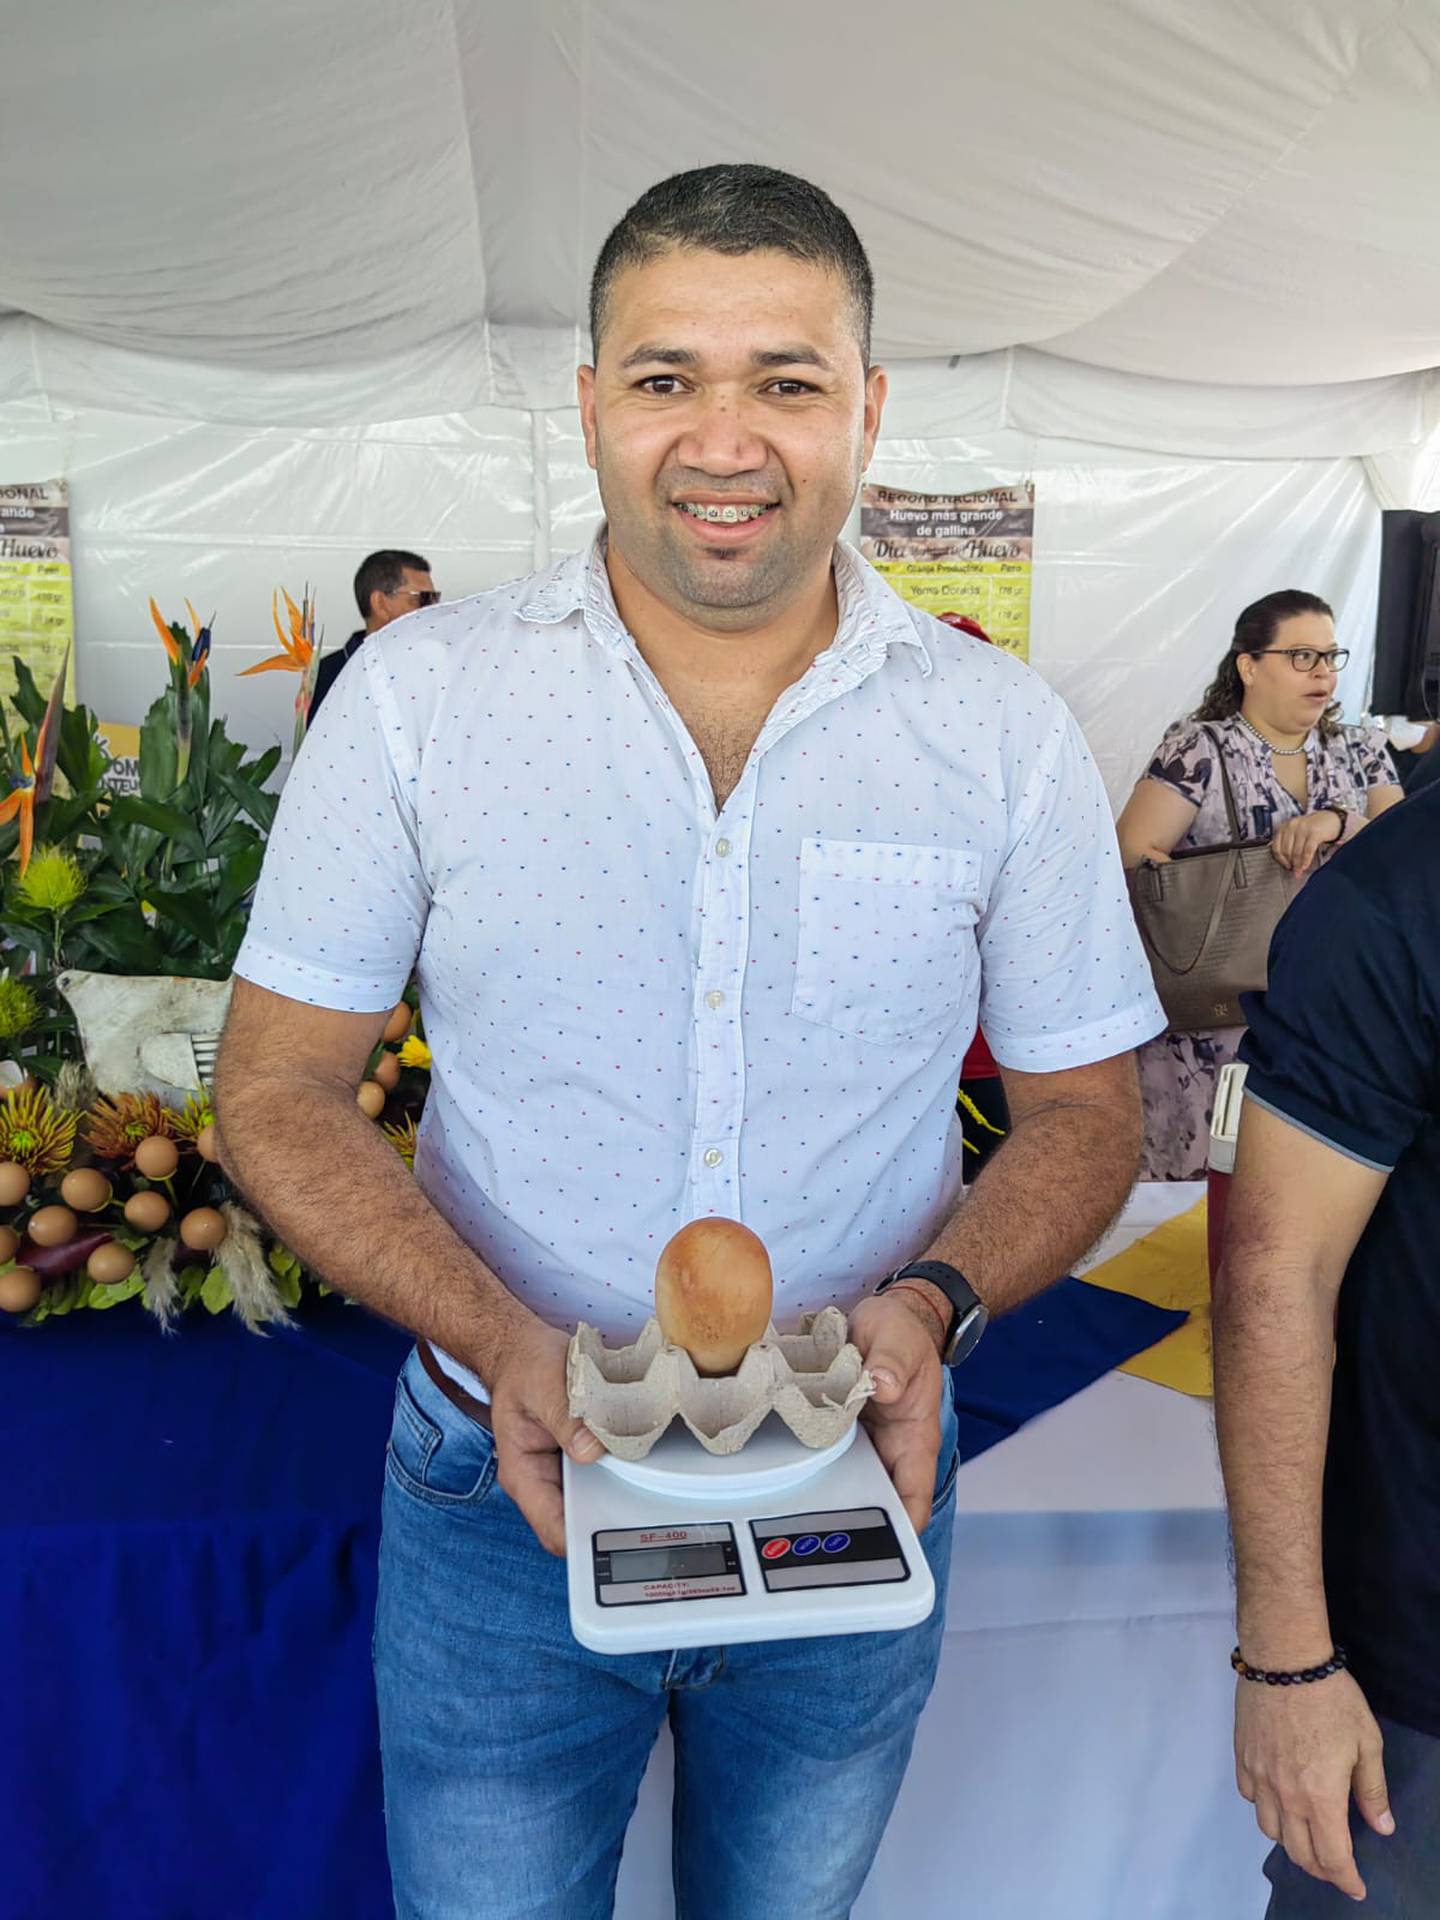 La Cámara Costarricense de Avicultores celebró el 14 de octubre del 2022 el Día Mundial del Huevo en el parque Juan Santamaría de Alajuela. En la foto don Andrés Prendas muestra el huevo más grande del país, el cual pesó 190 gramos.